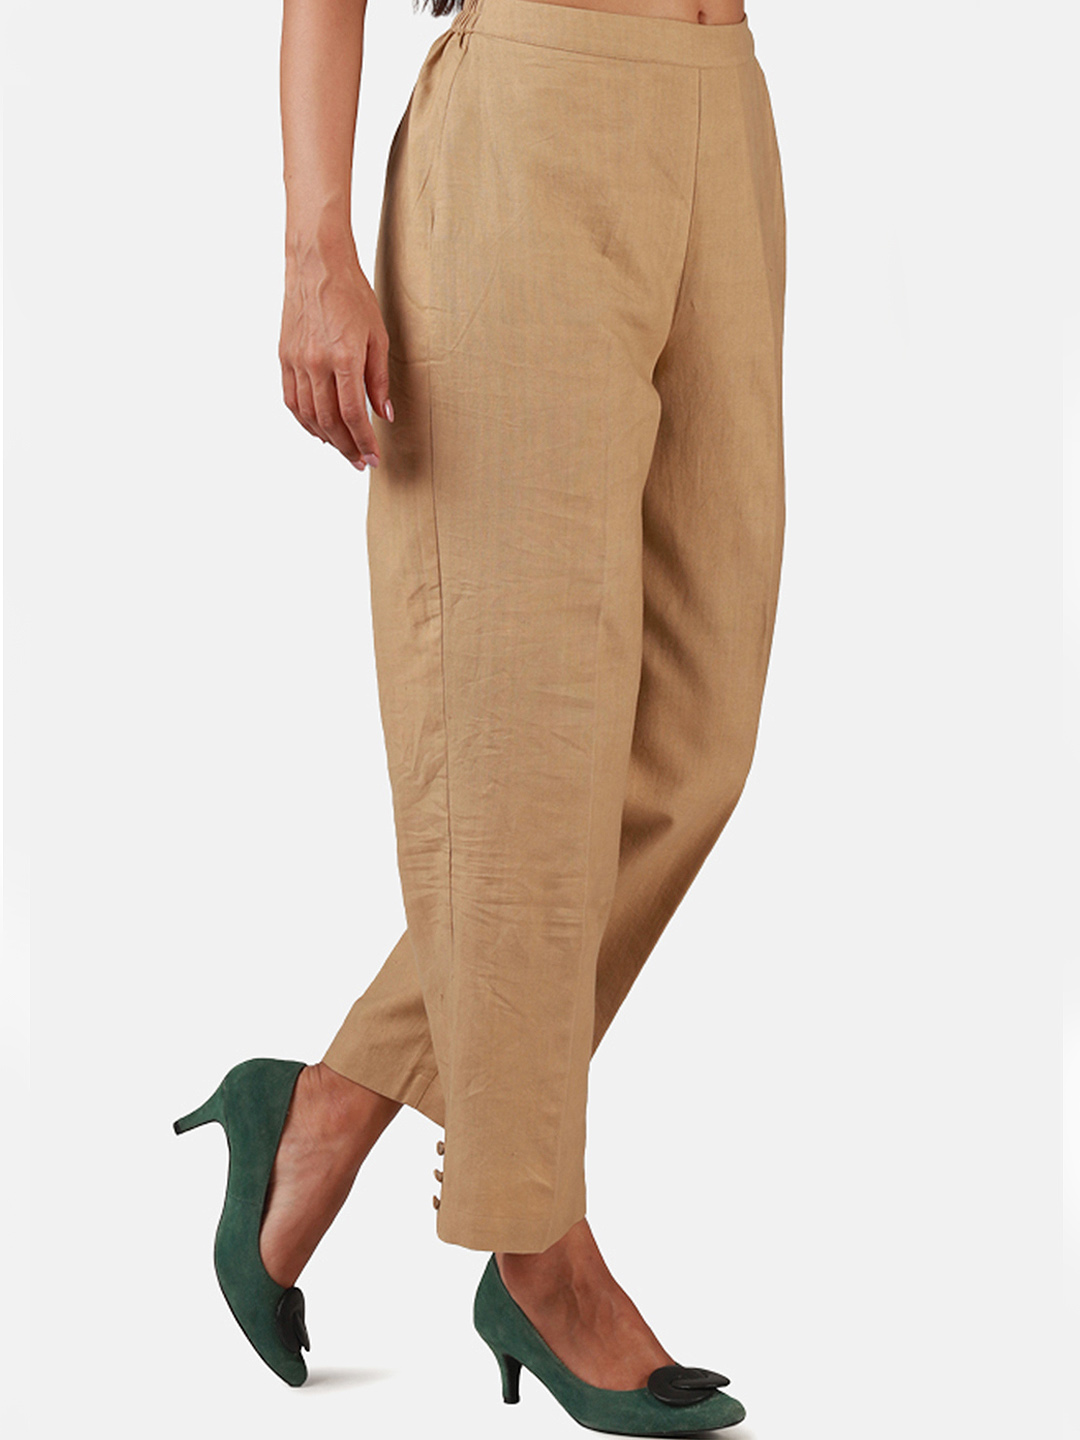 Khadi Trousers - Buy Khadi Trousers online in India